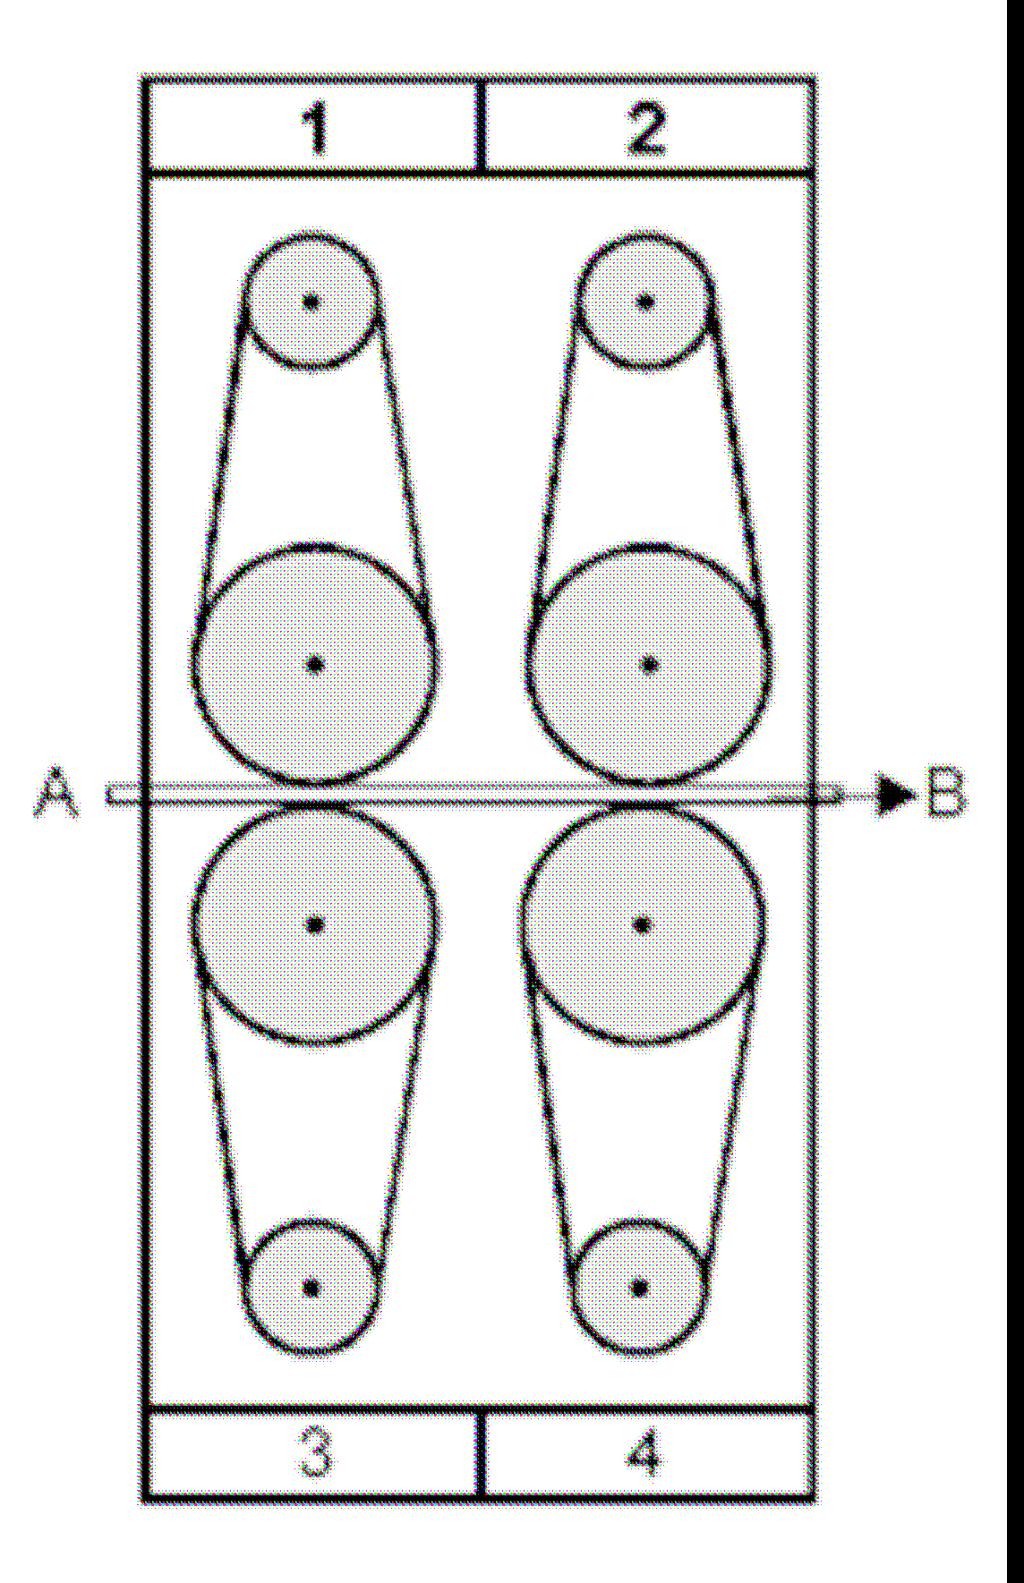 12) (ENEM) - Na preparação da madeira em uma indústria de moveis, utiliza-se uma lixadeira constituída de quatro grupos de polias, como ilustra o esquema ao lado.